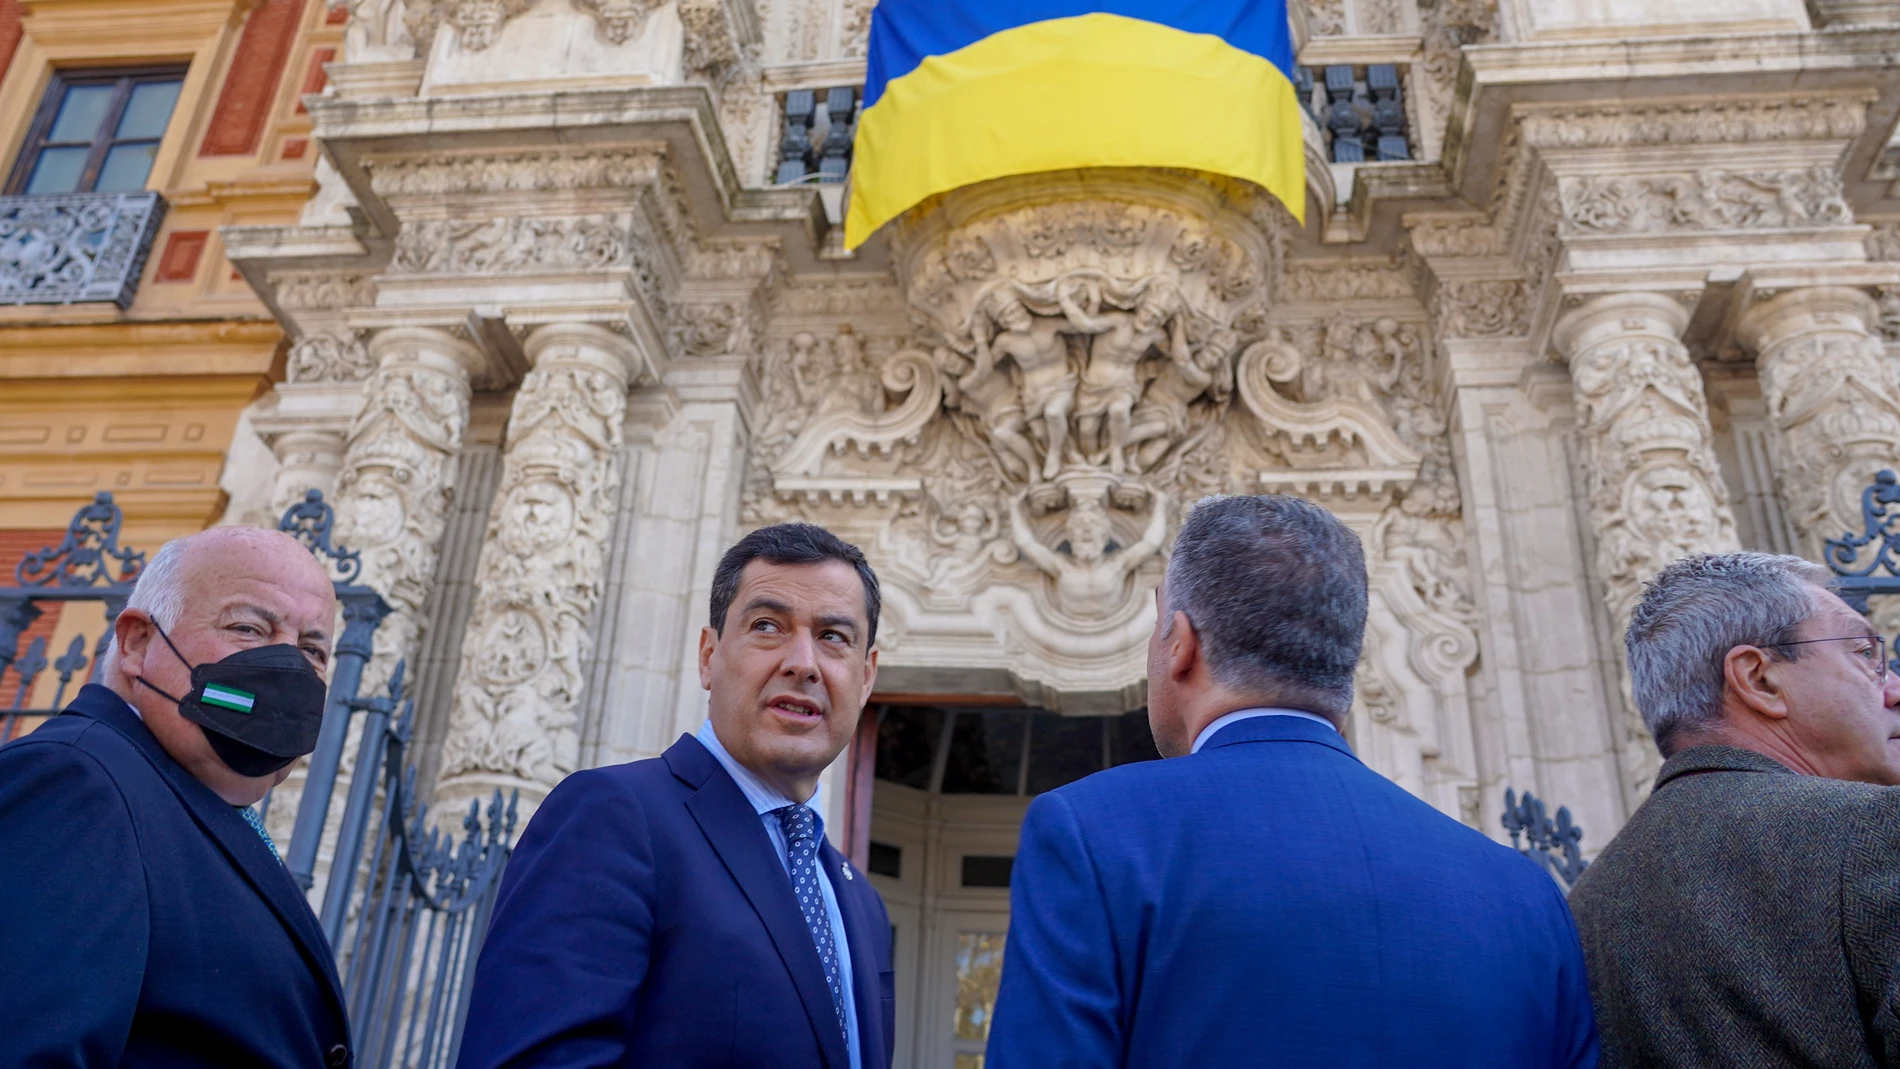 El presidente de la Junta de Andalucía, Juanma Moreno, y el resto de miembros del Consejo de Gobierno asisten a la colocación de la bandera nacional de Ucrania en la fachada principal del Palacio de San Telmo